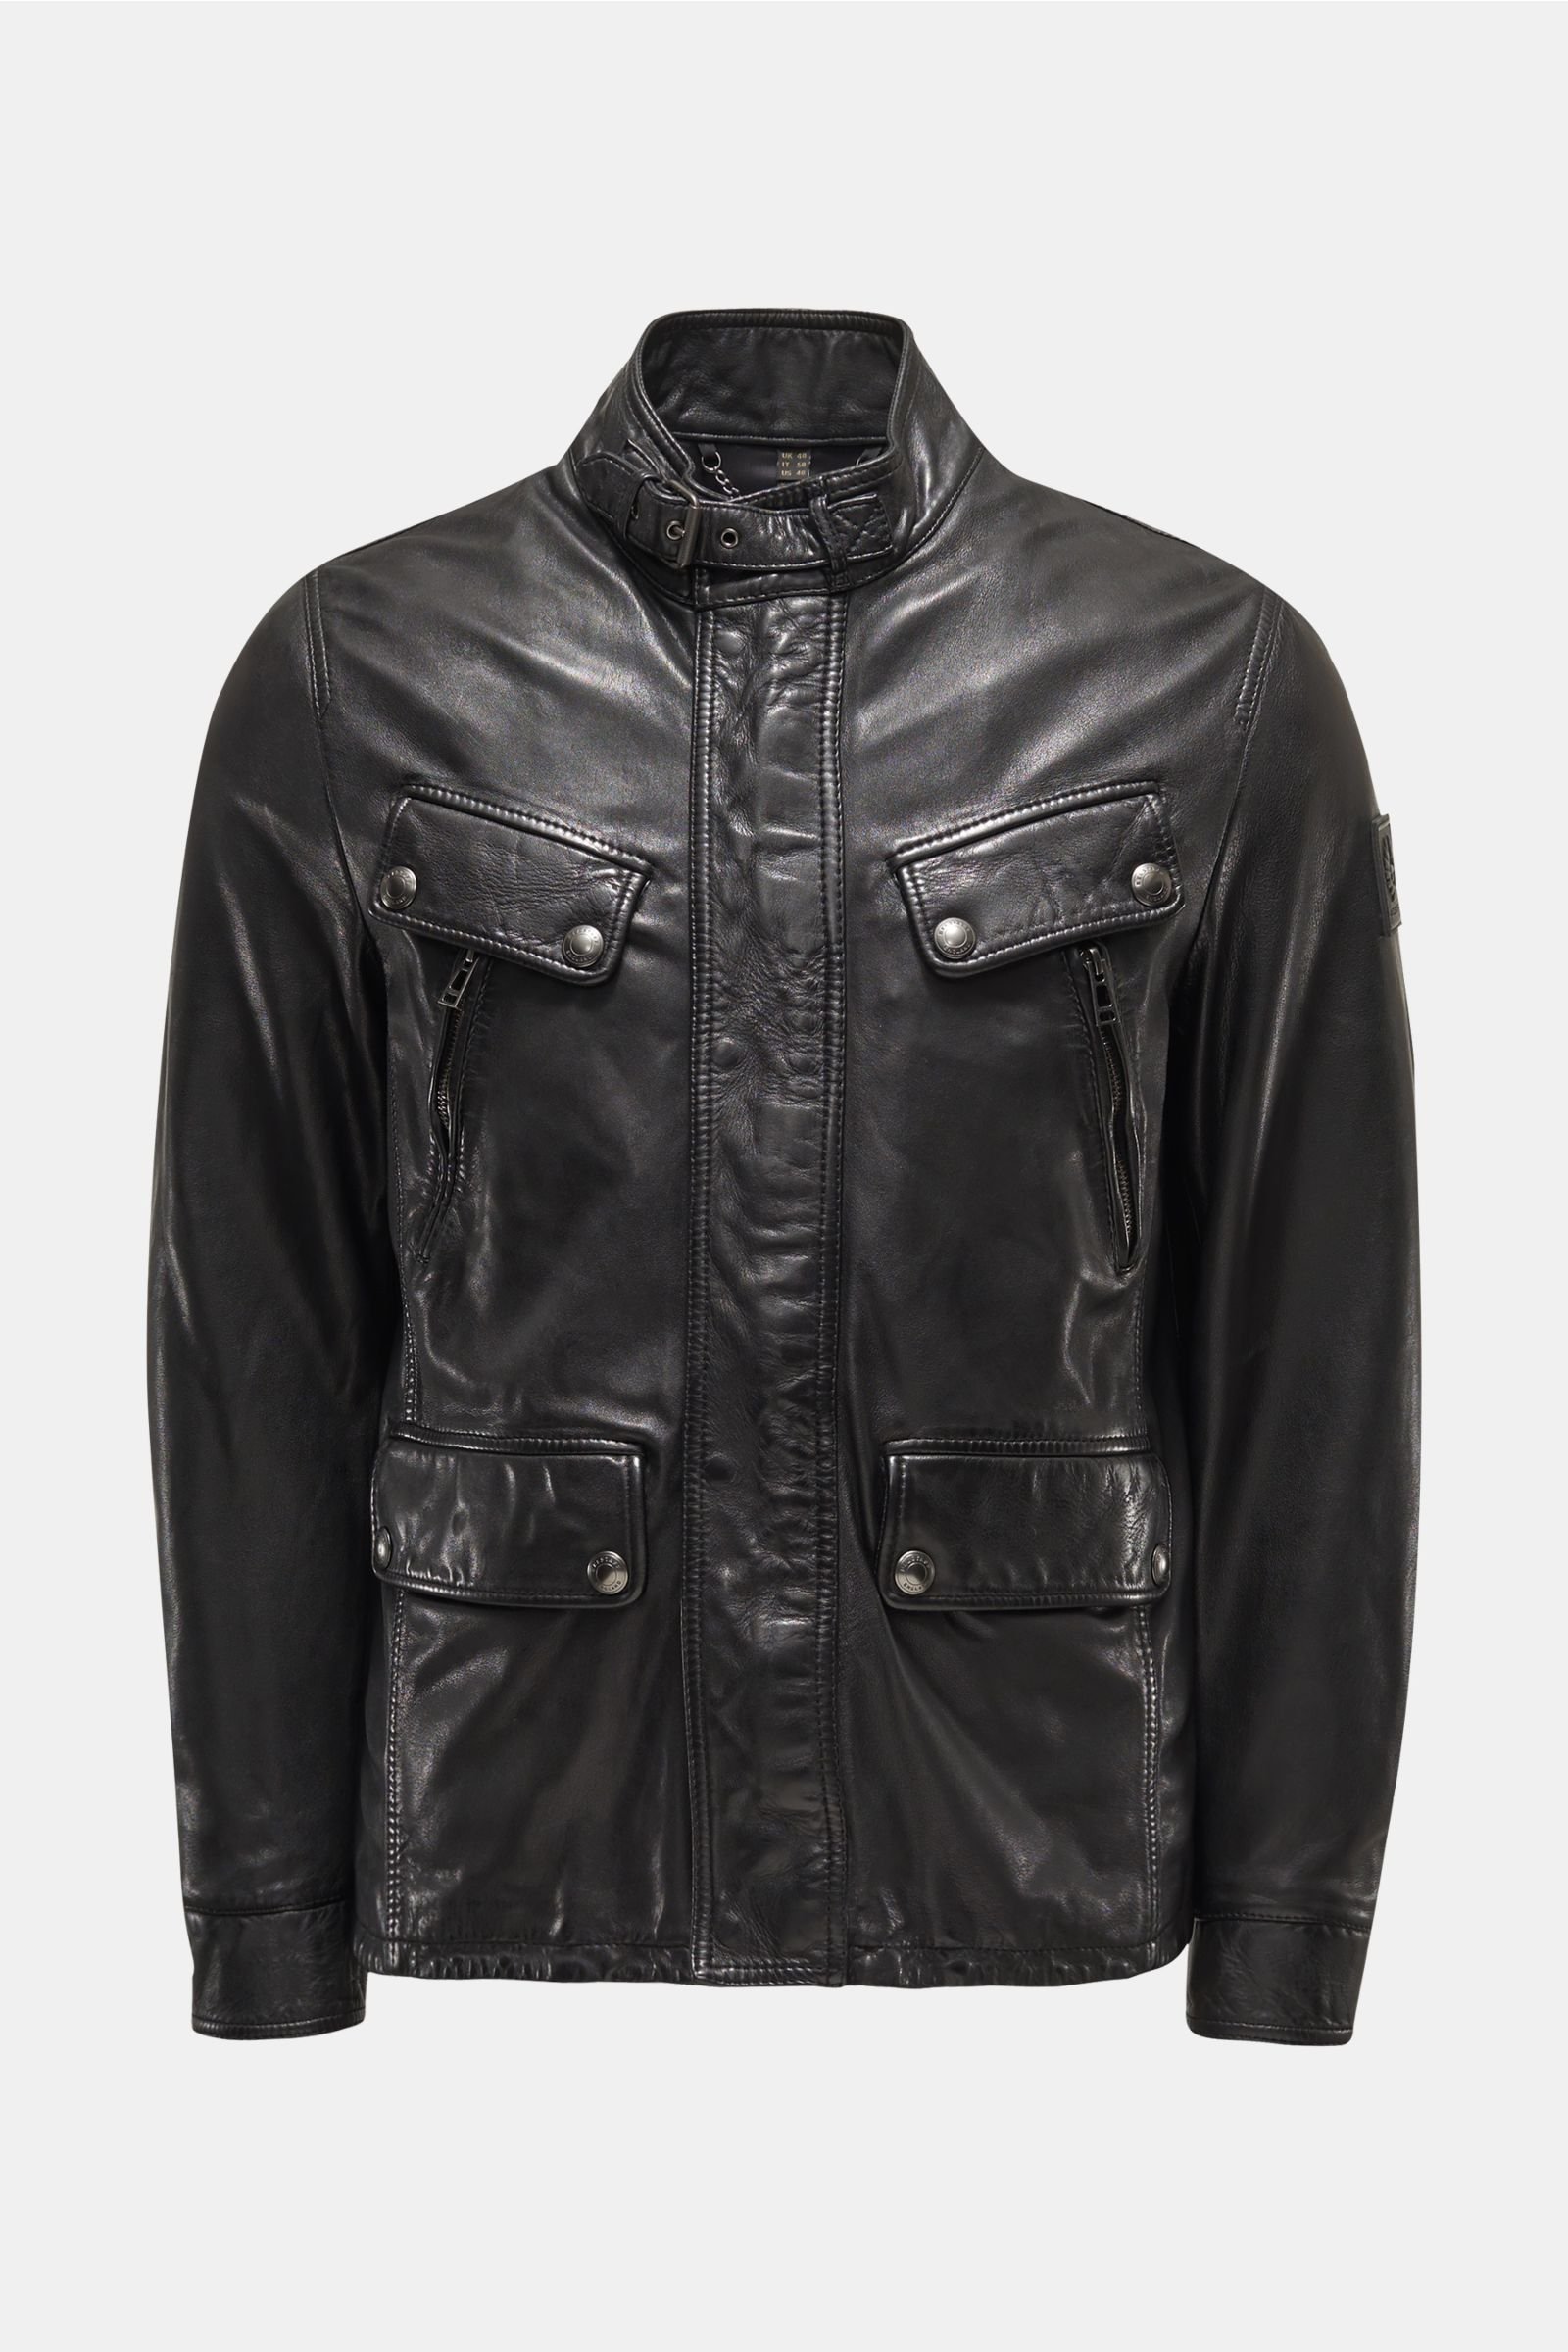 BELSTAFF leather jacket 'Denesmere' black | BRAUN Hamburg